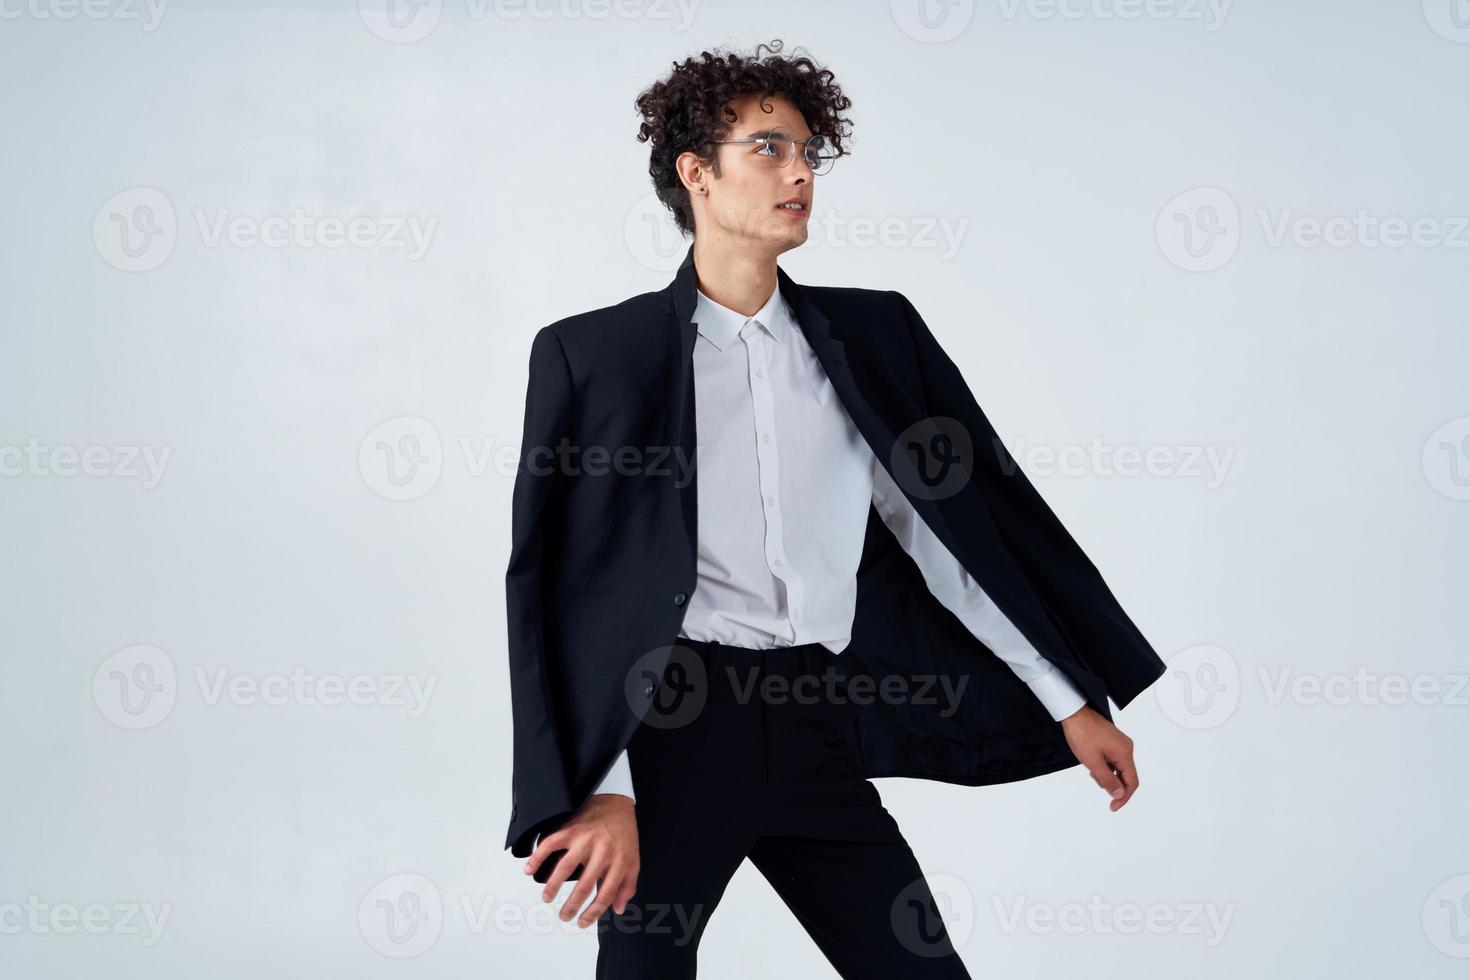 Geschäft Mann lockig Haar schwarz Jacke Emotionen Studio foto